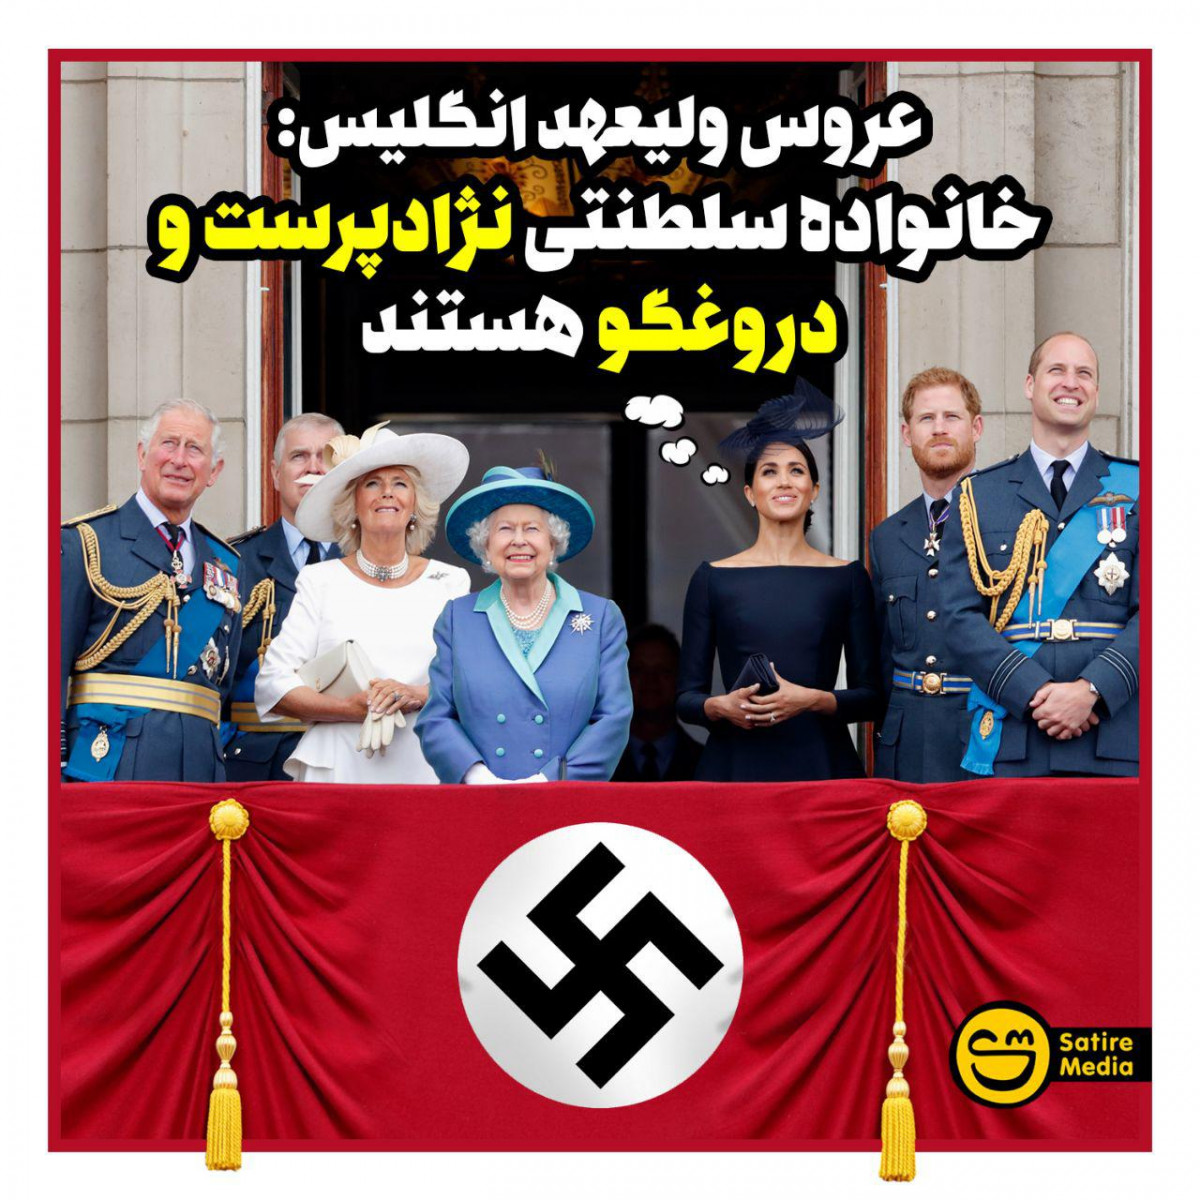 پوستر: عروس ولیعهد انگلیس خانواده سلطنتی نژادپرست و دروغگو هستند